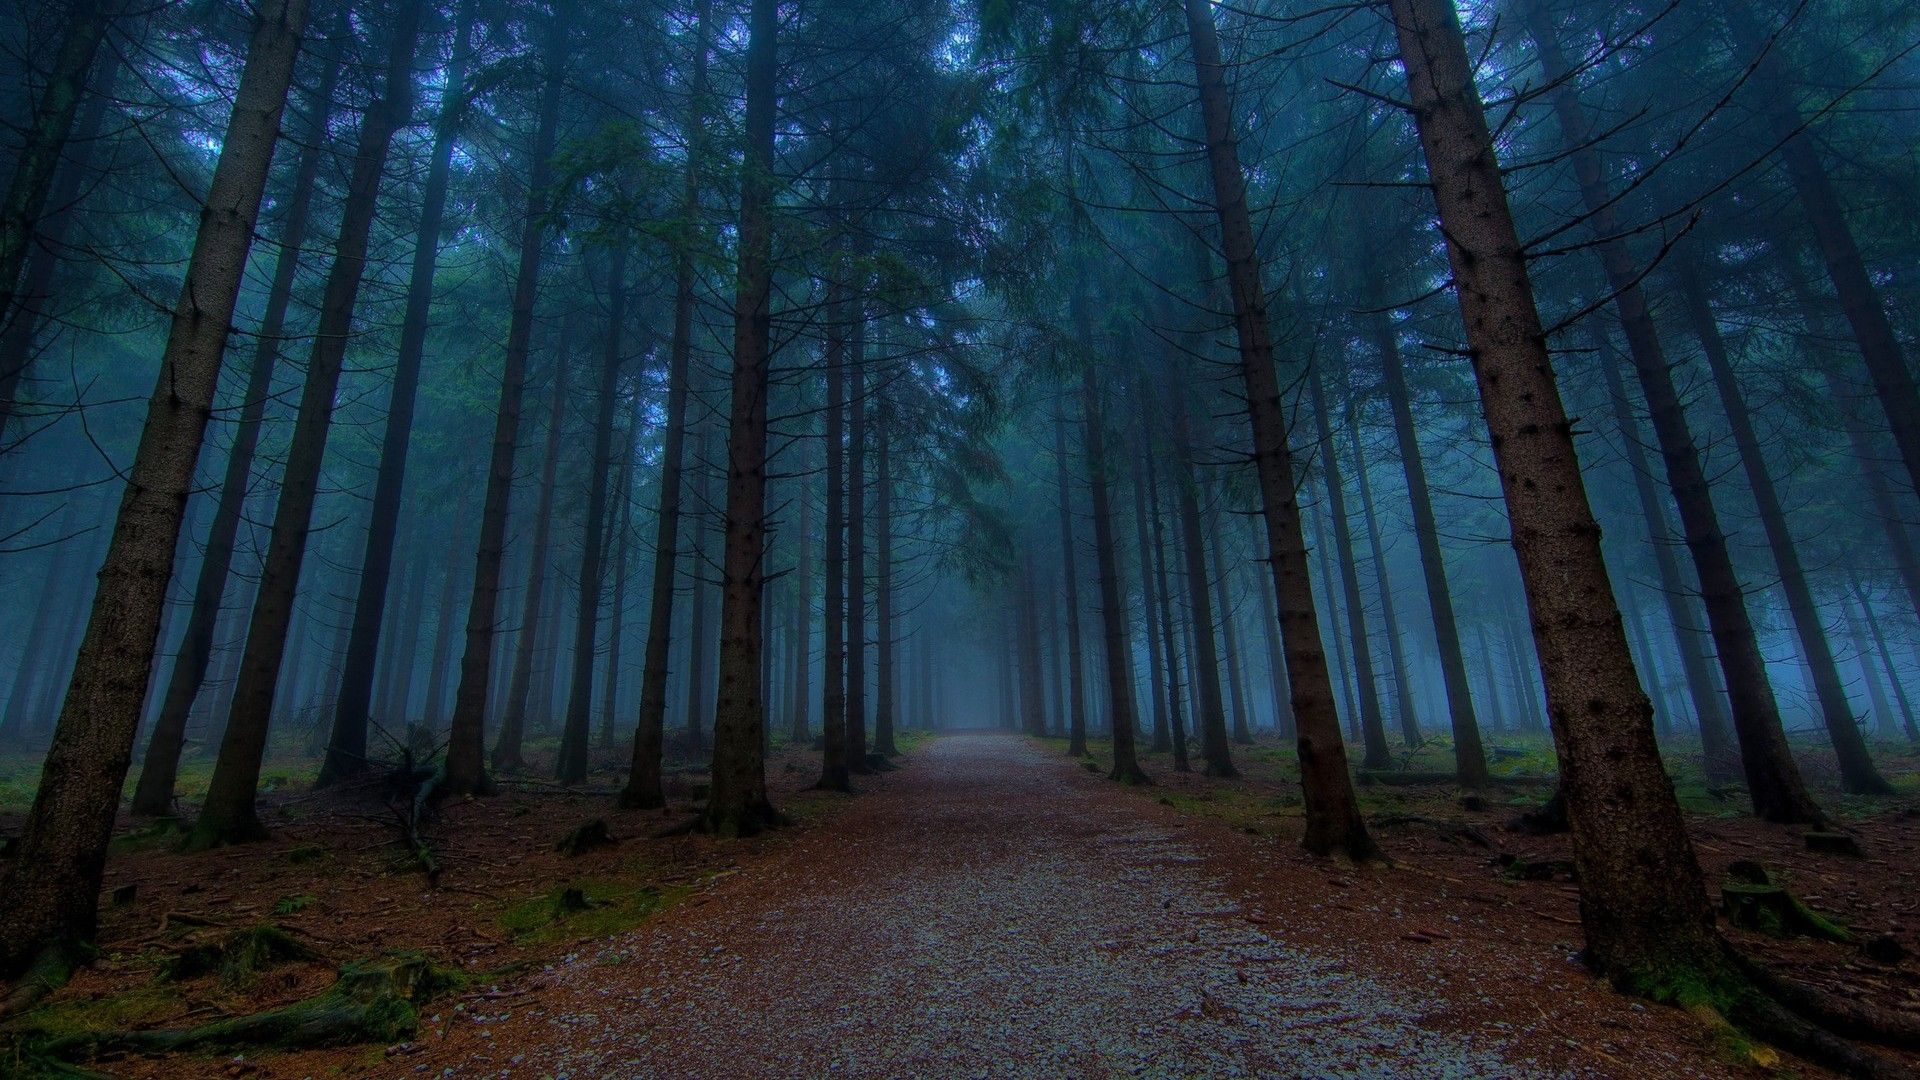 Fondos de pantalla: camino de tierra, bosque, pinos, niebla 1920x1080 - kasqay